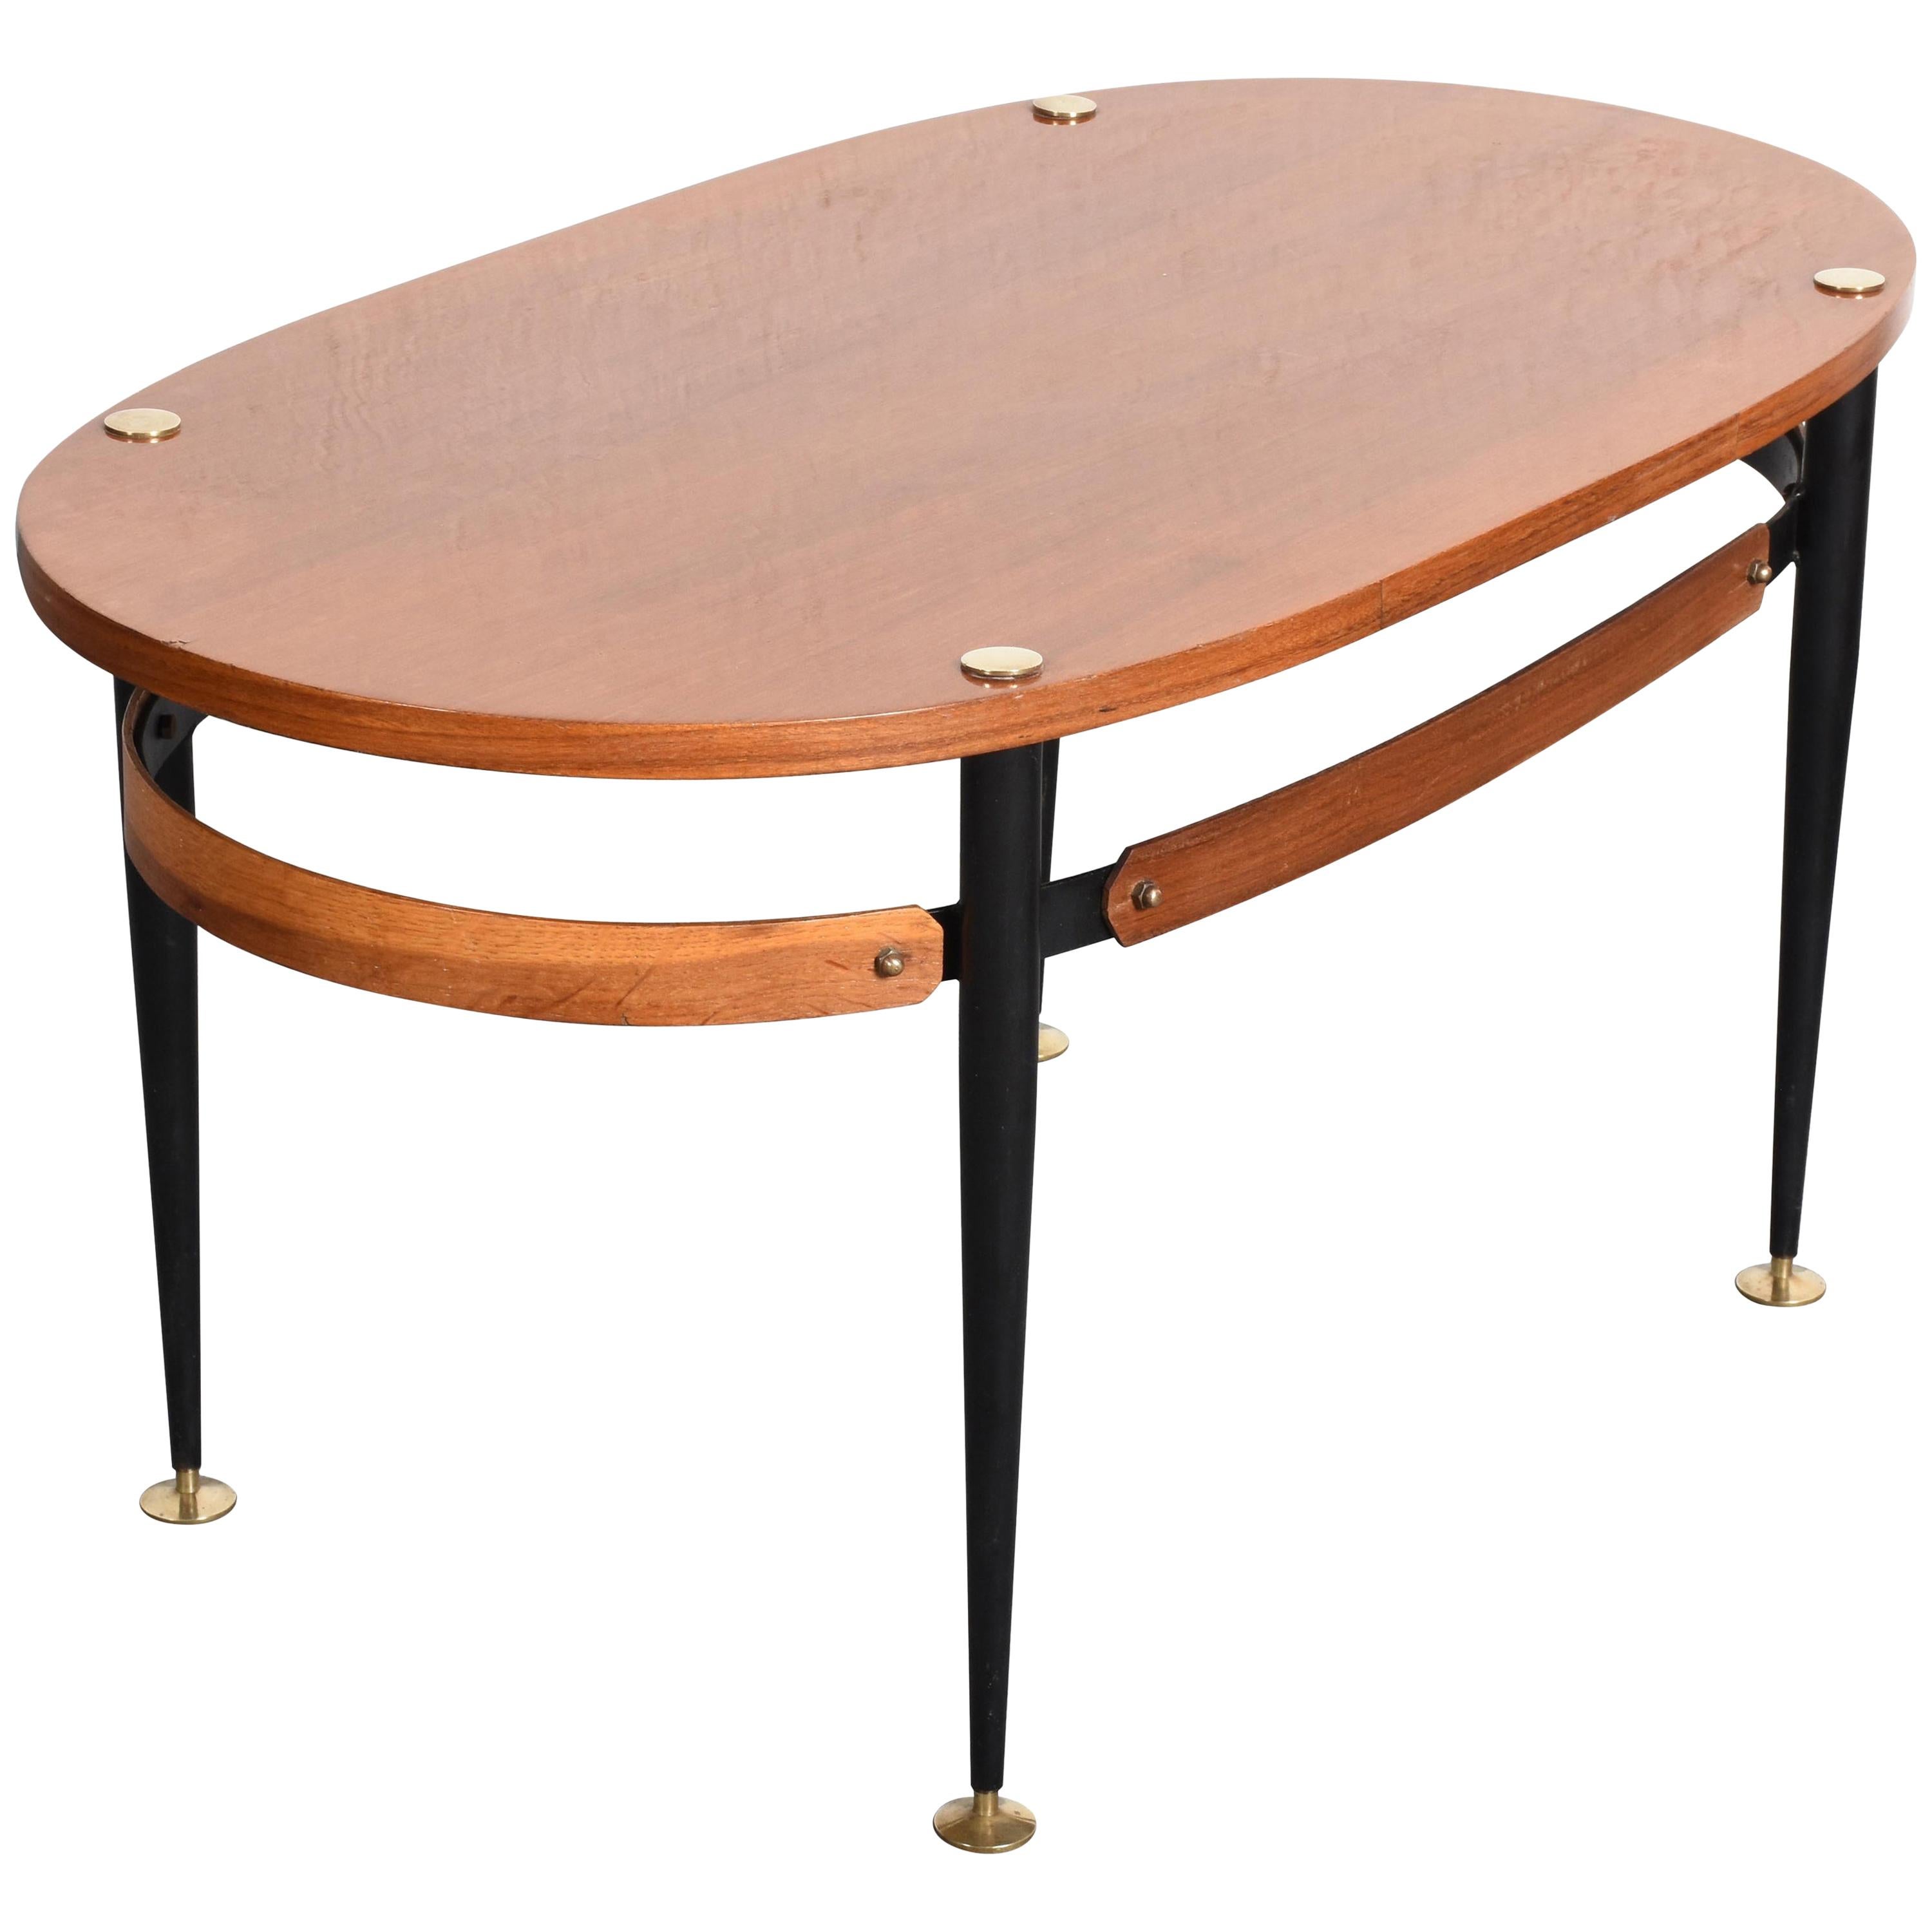 Silvio Cavatorta Midcentury Iron and Teak Wood Oval Italian Coffee Table, 1950s For Sale